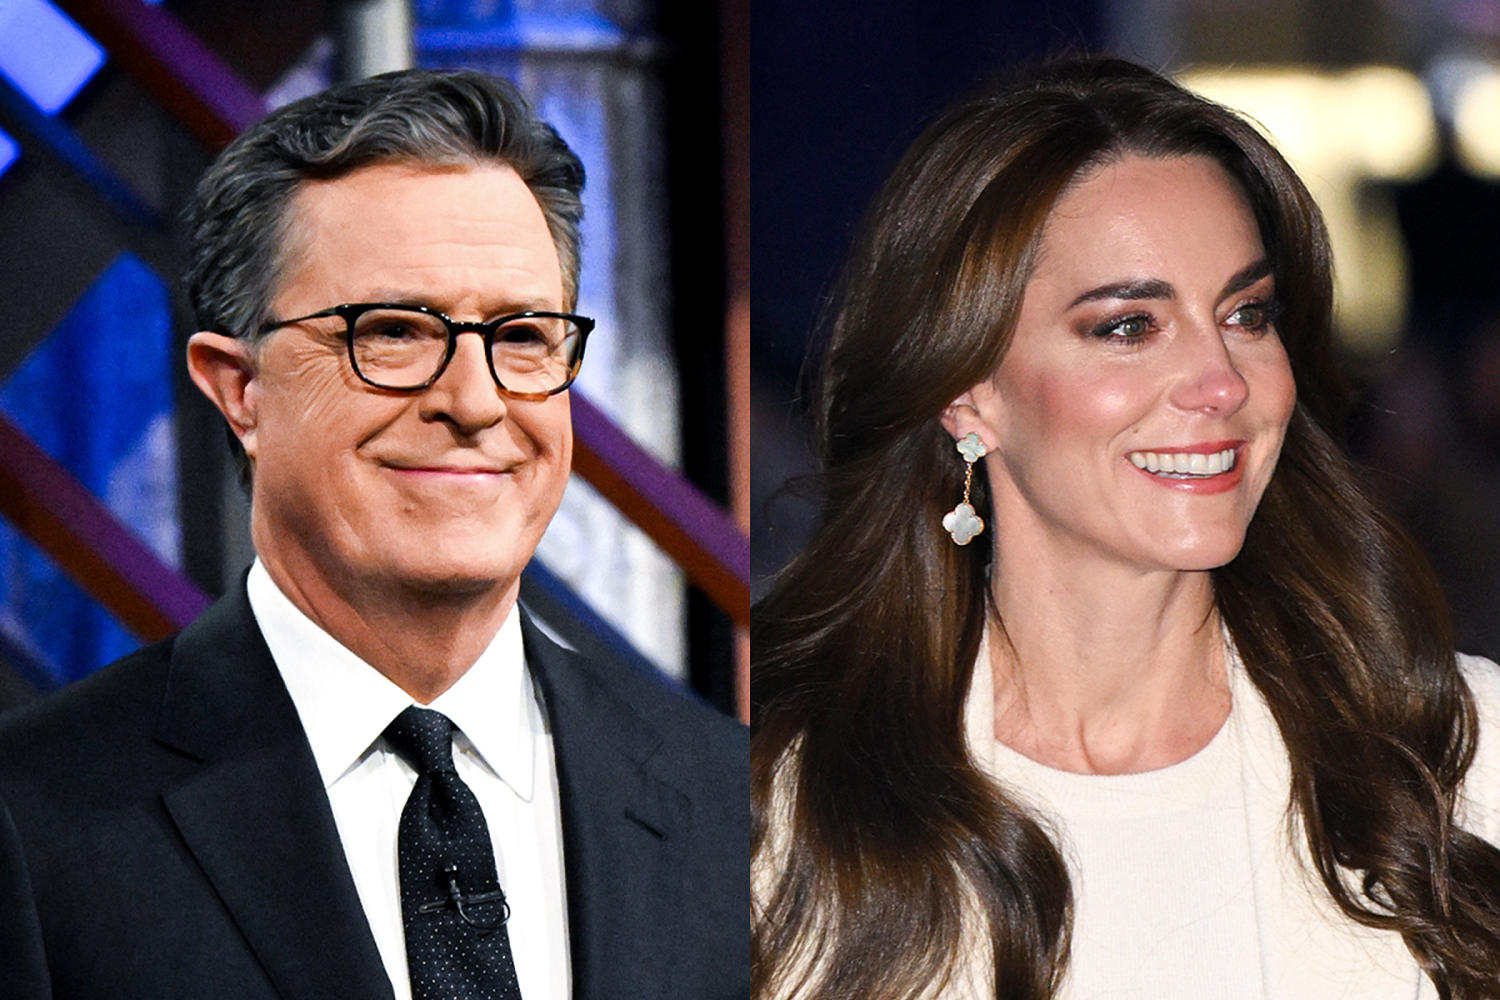 Stephen Colbert addresses backlash to Kate Middleton jokes, but stops short of apology